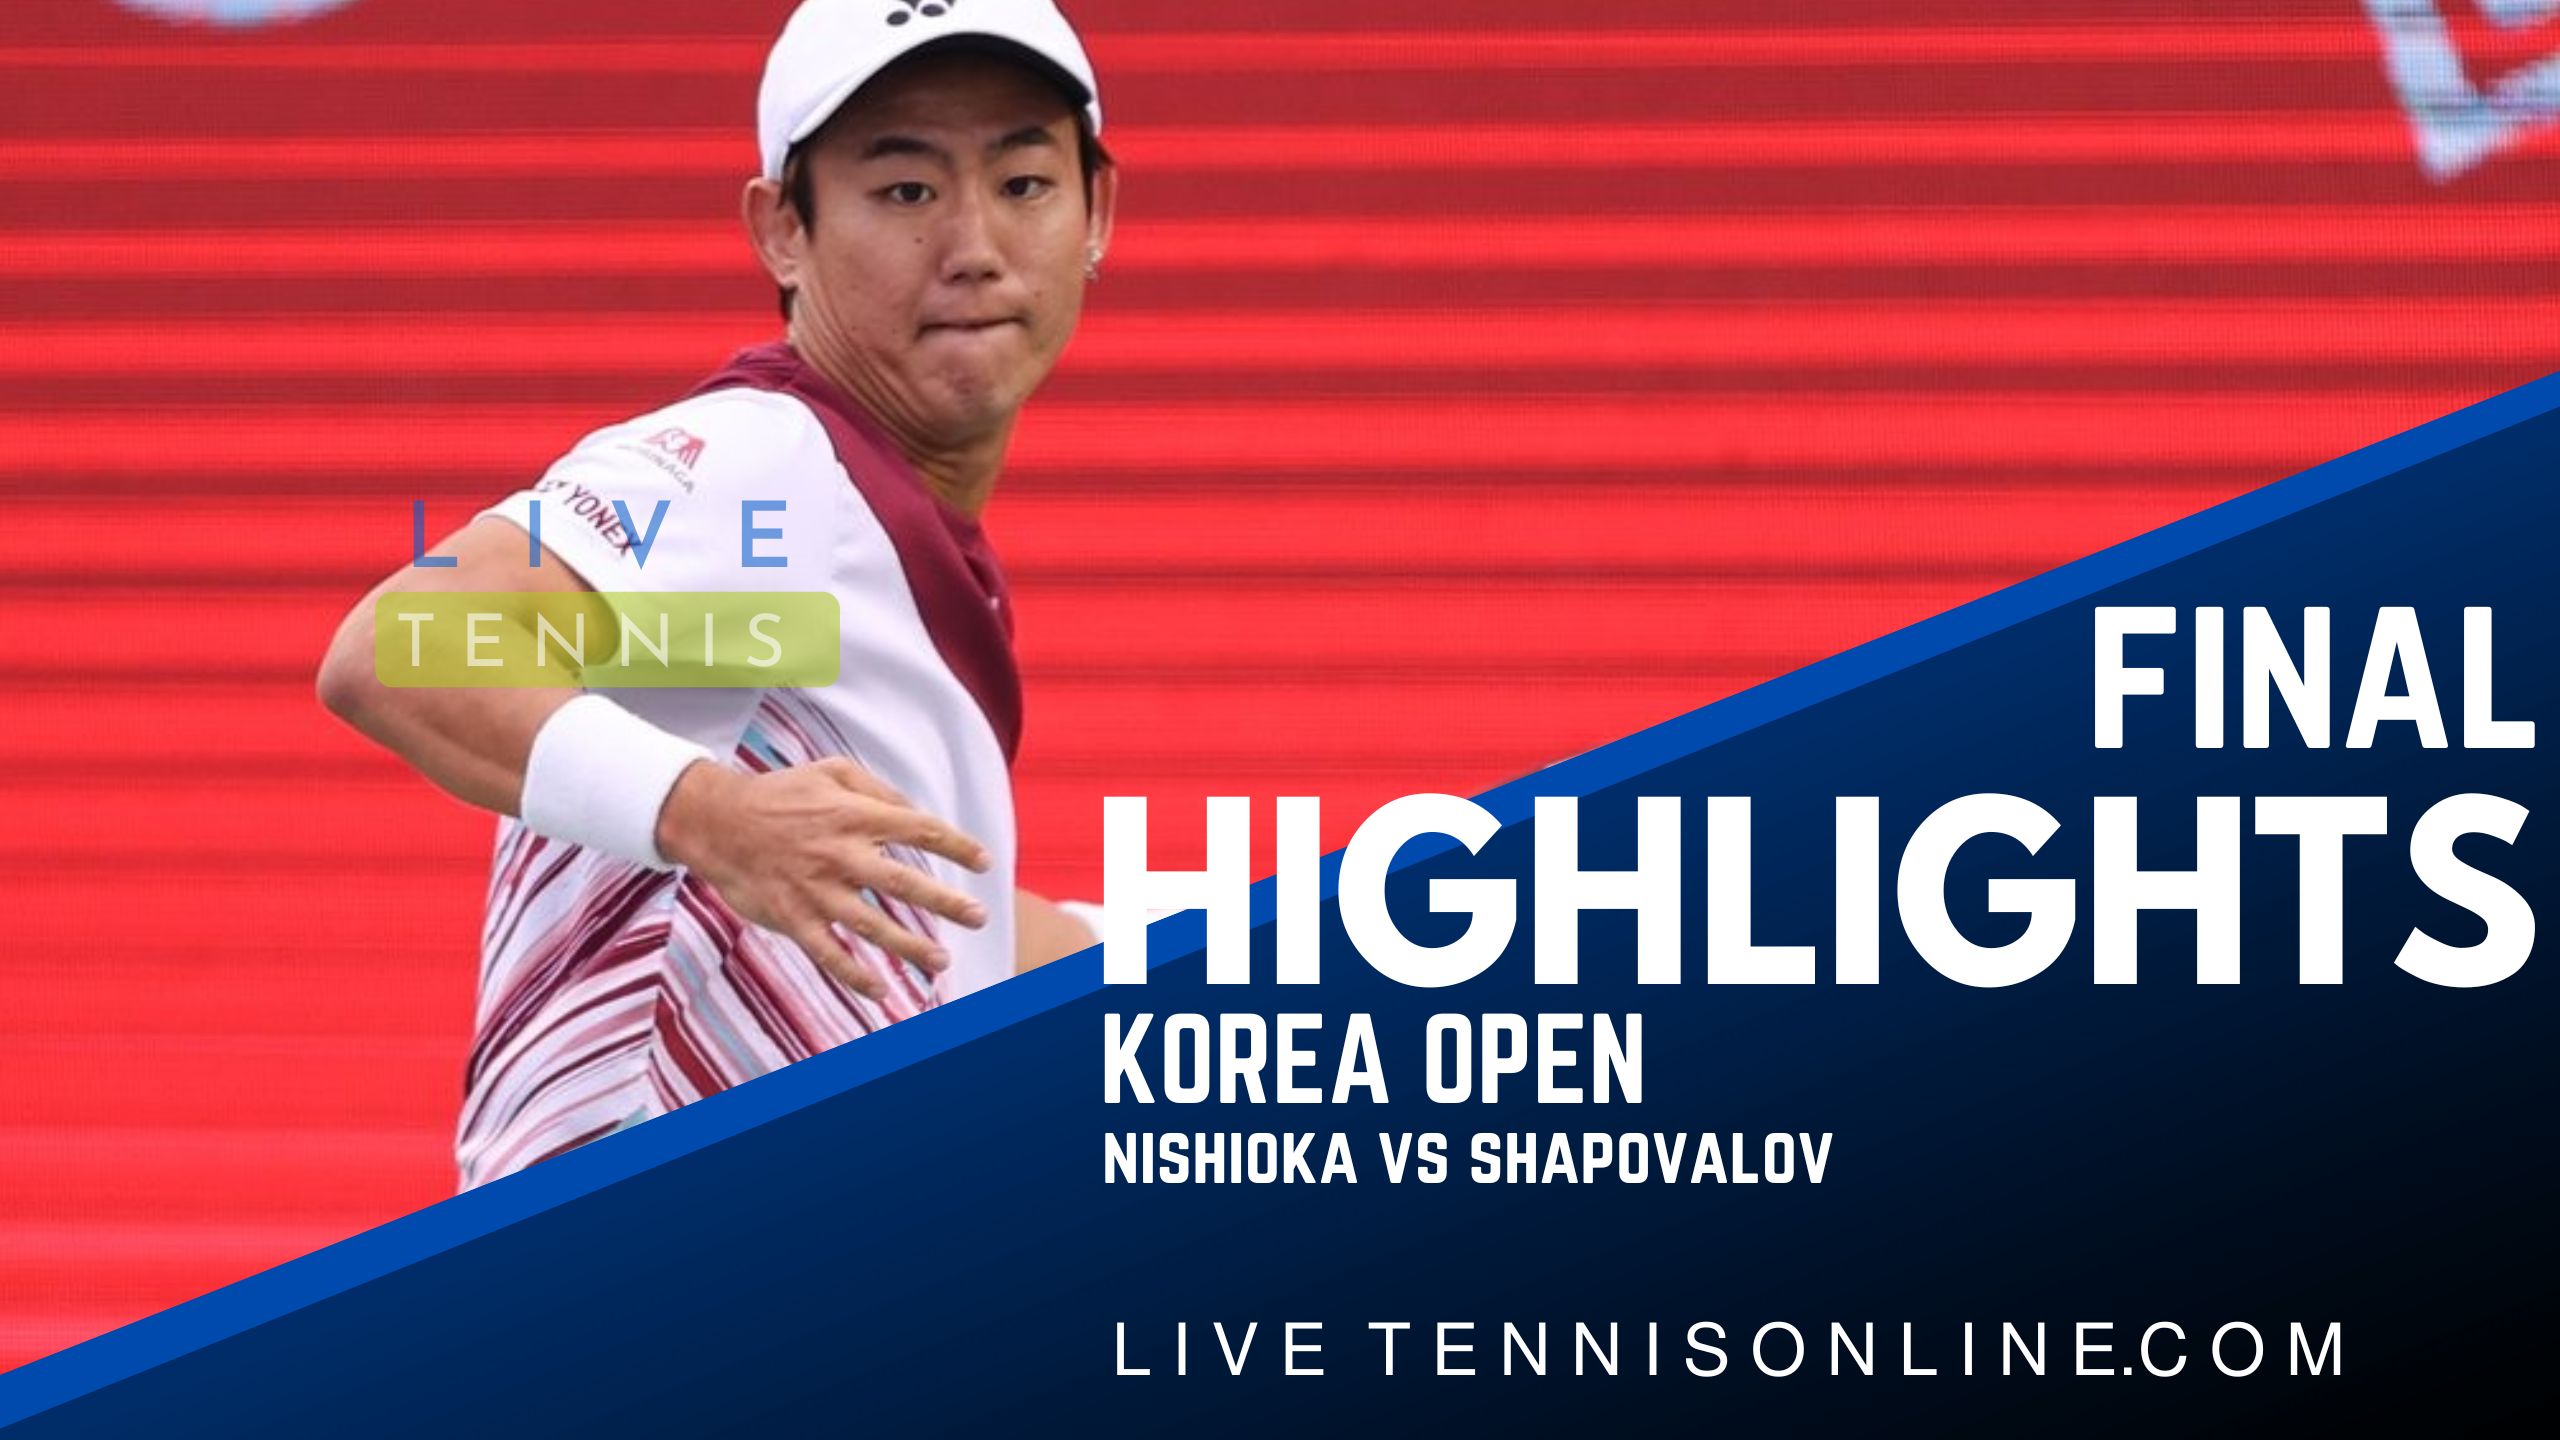 Nishioka Vs Shapovalov Final Highlights 2022 Korea Open